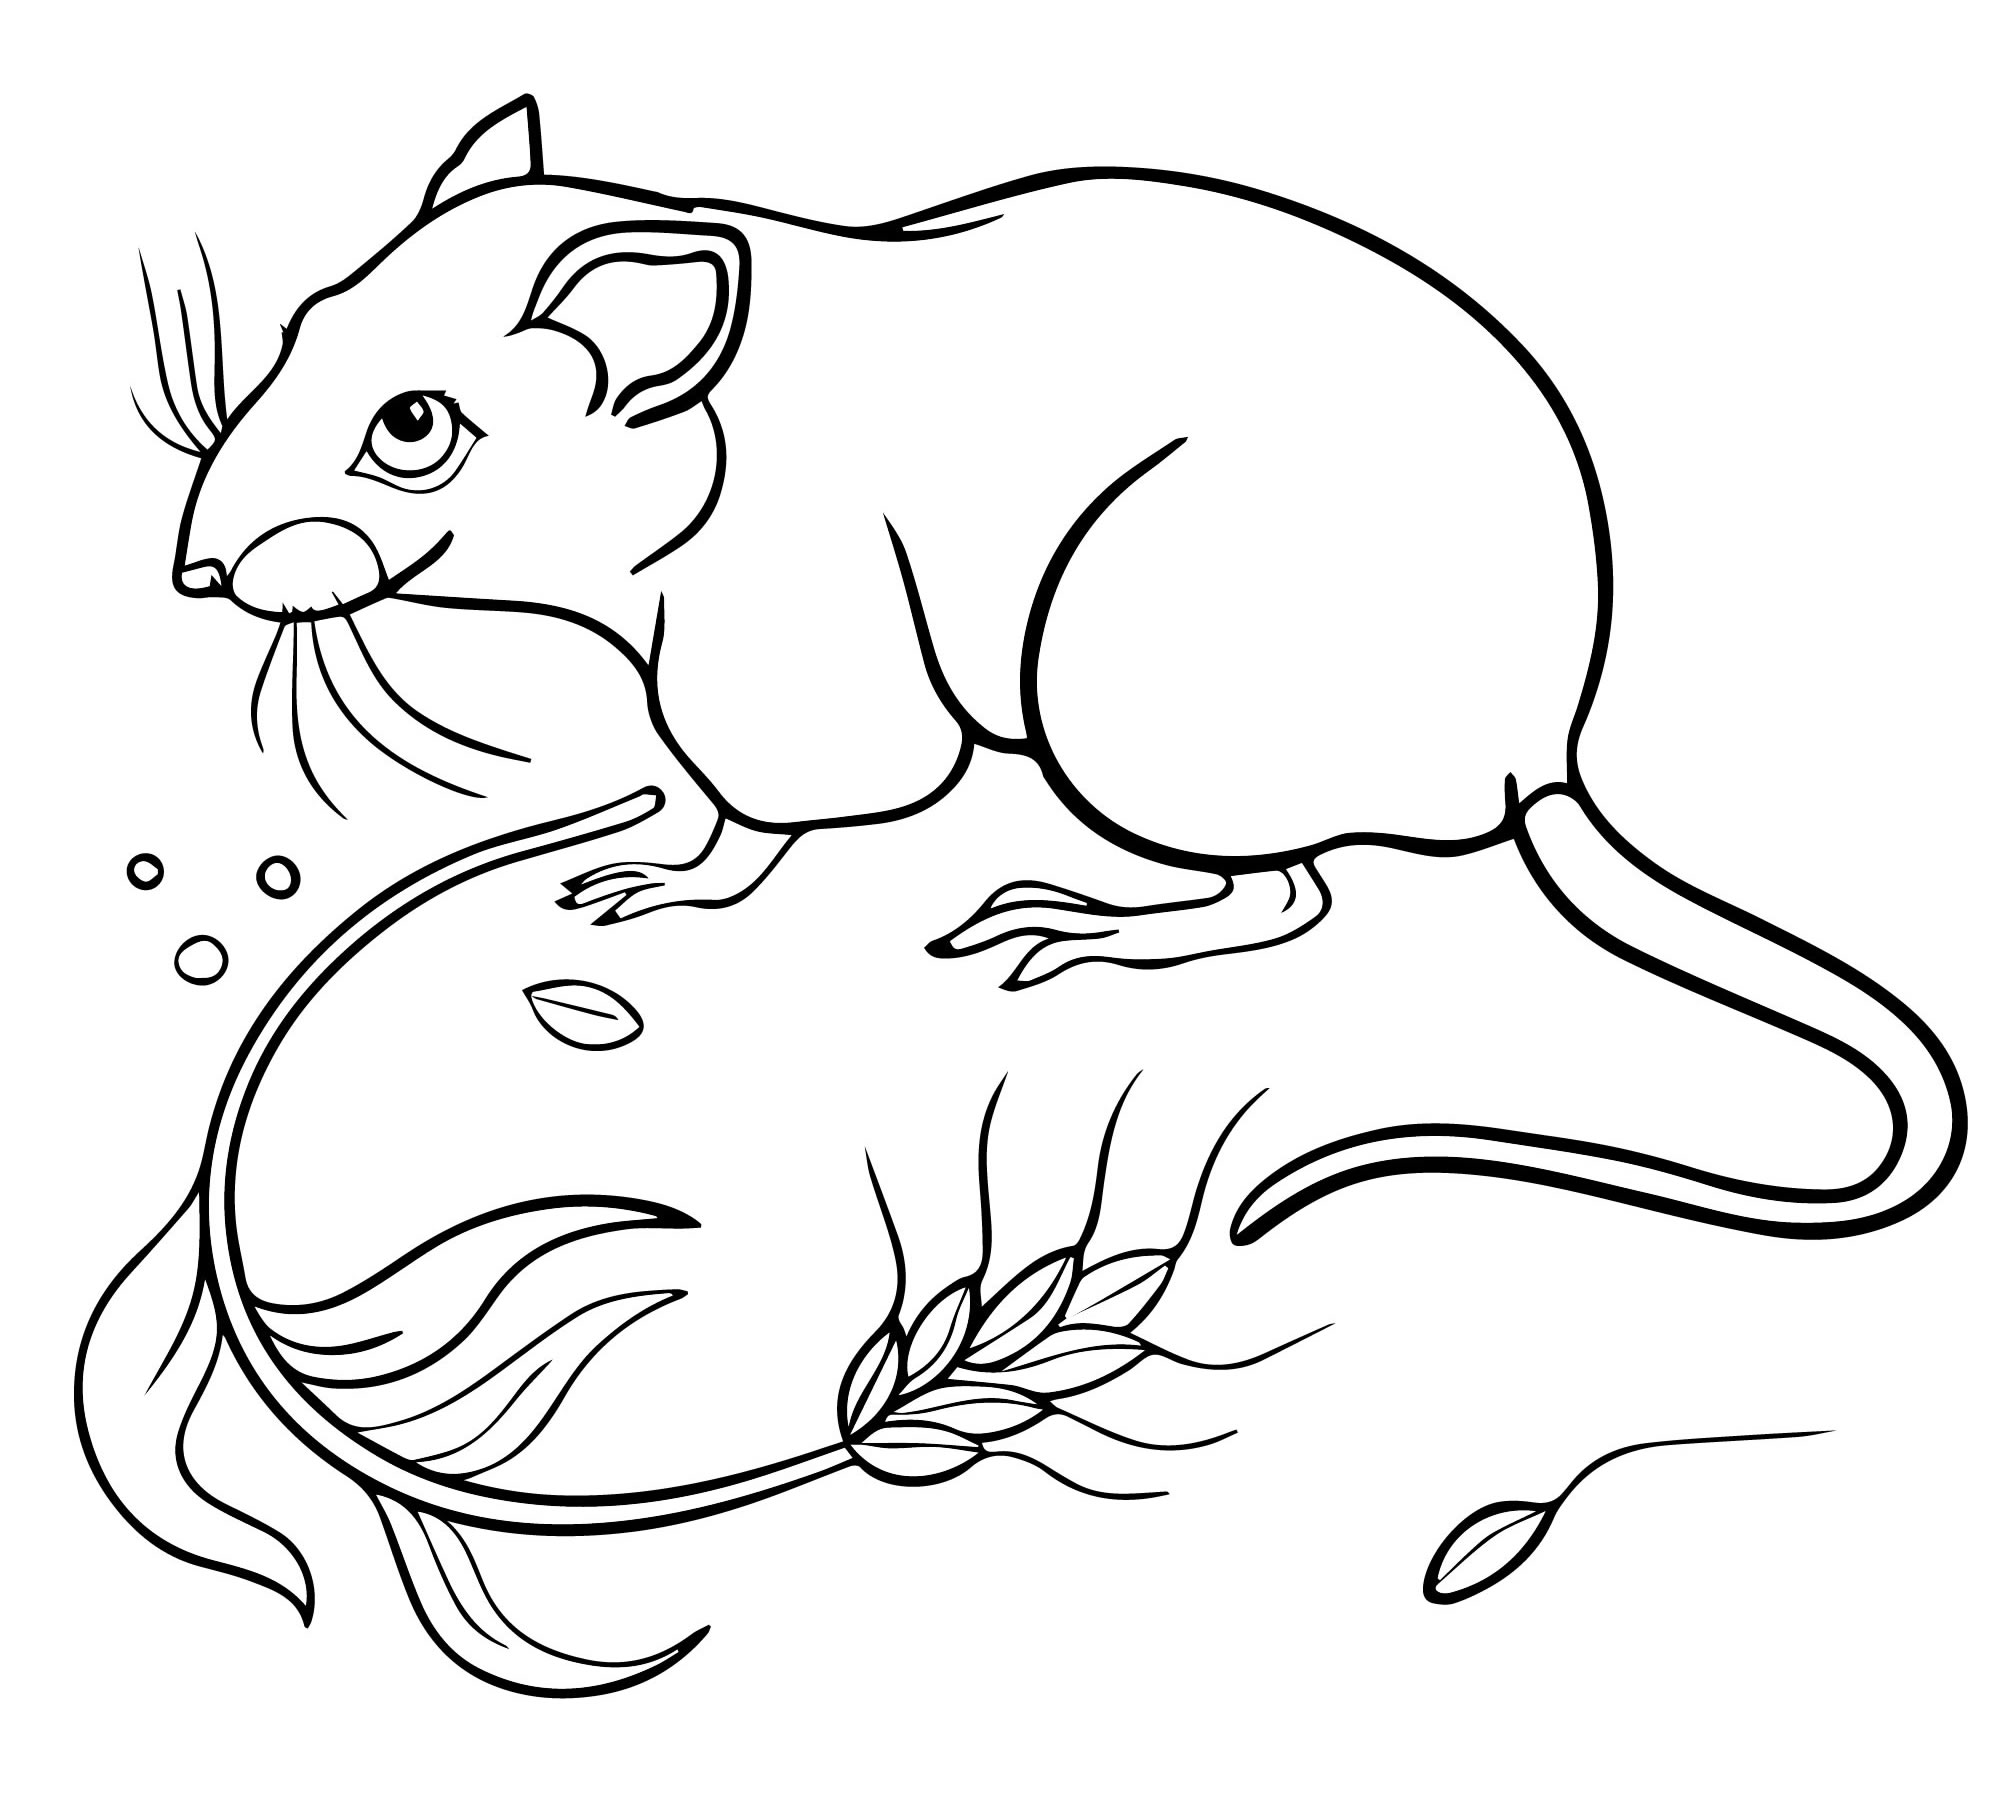 Раскраска мышь распечатать. Мышь раскраска. Мышь раскраска для детей. Крыса раскраска. Мышка раскраска для детей.